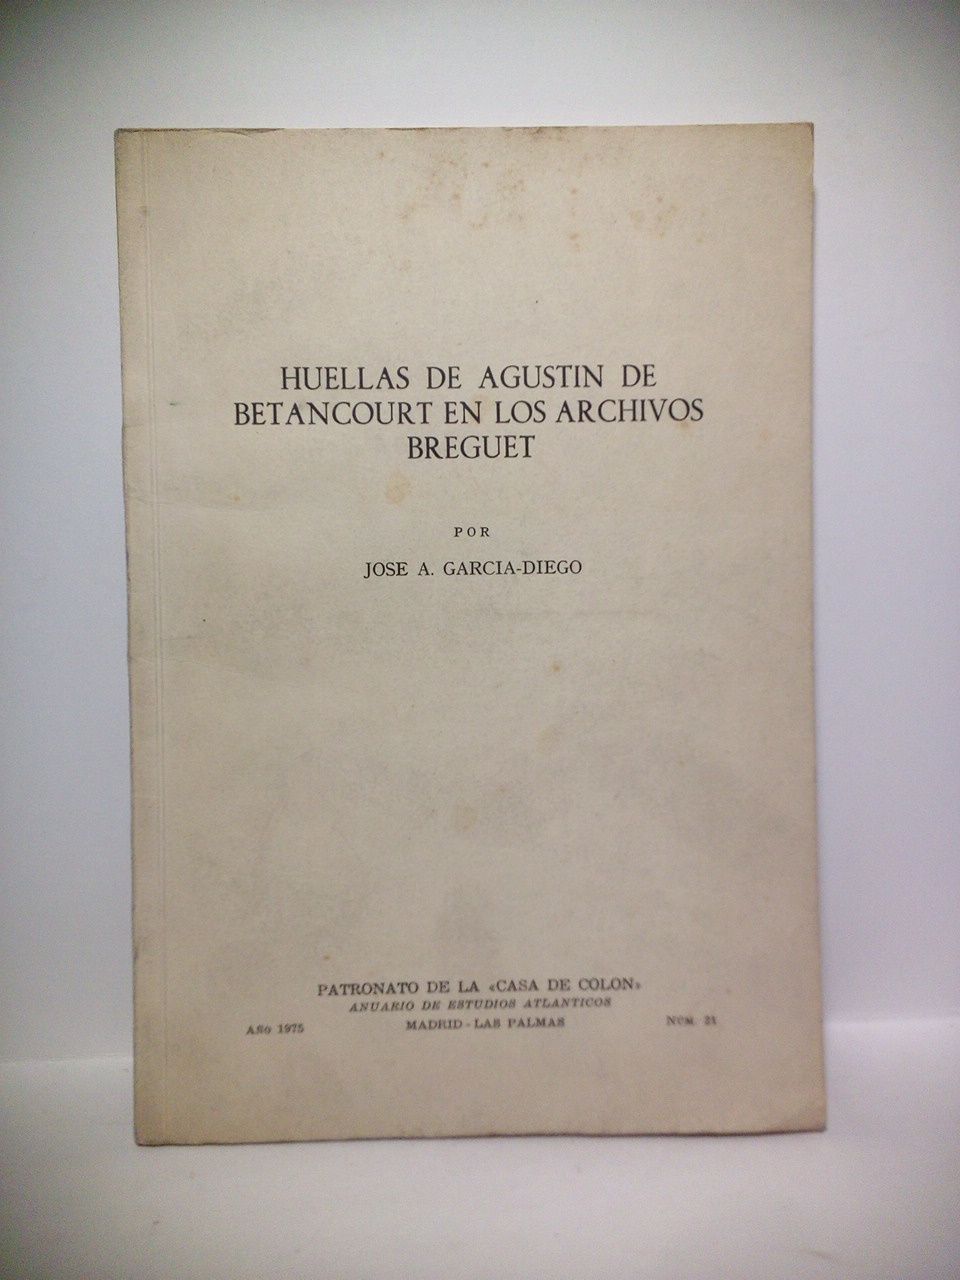 GARCIA-DIEGO, Jos A. - Huellas de Agustn de Betancourt en los Archivos Breguet